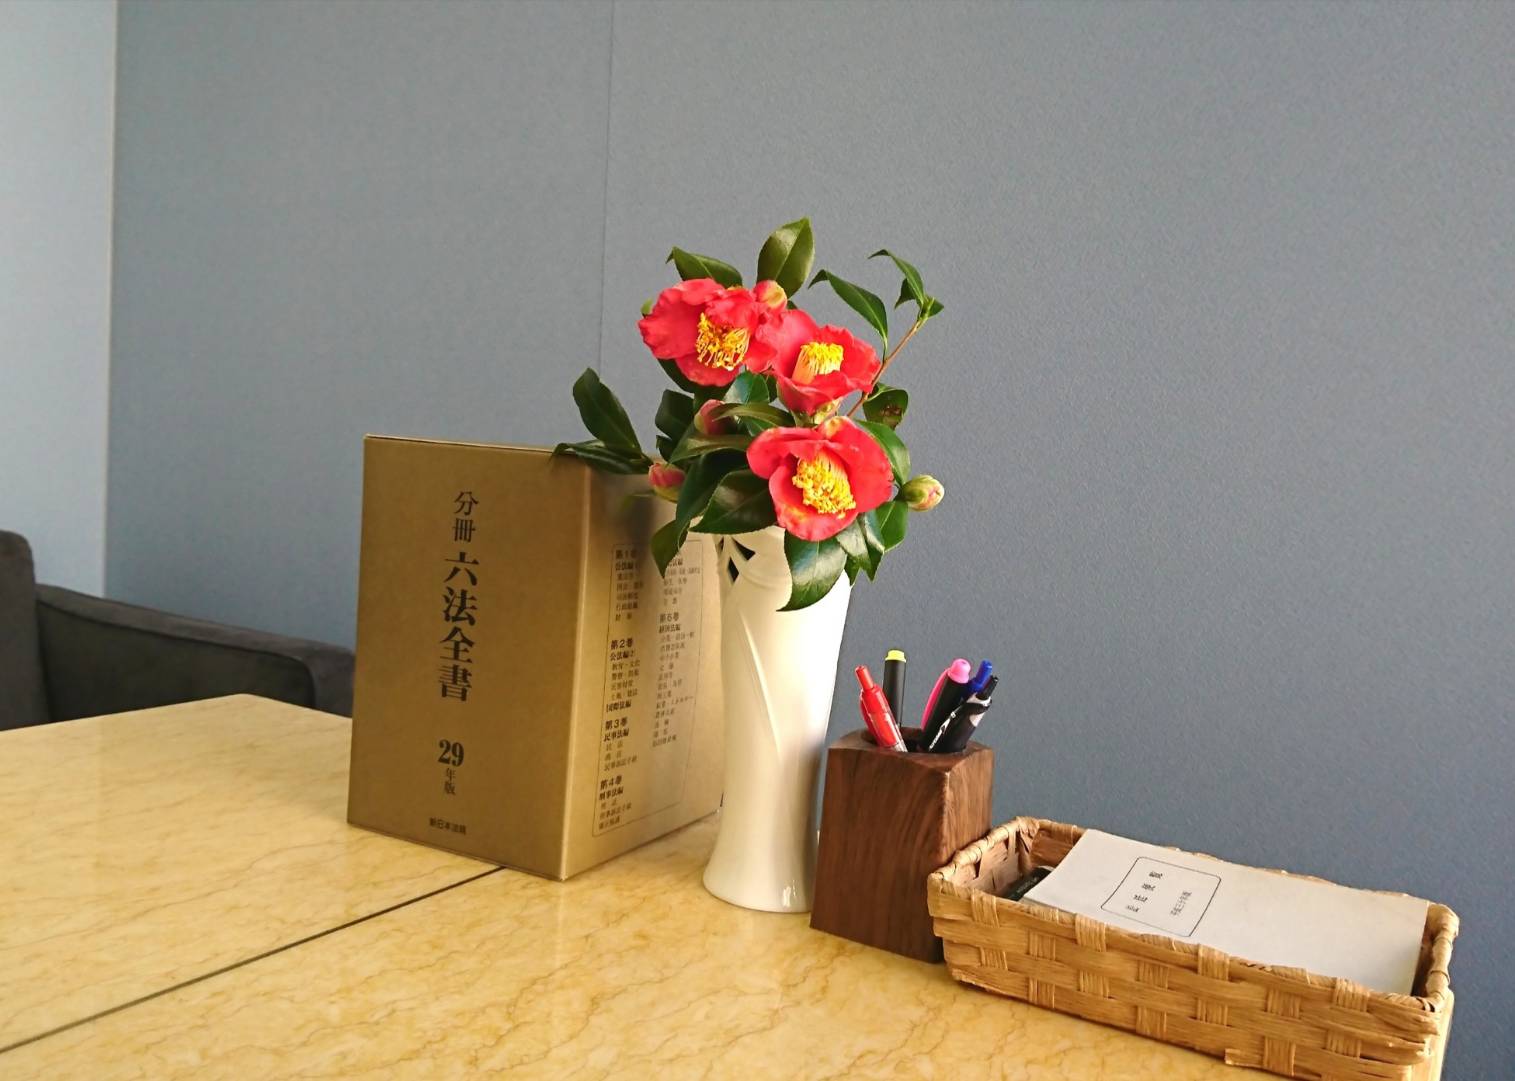 当事務所のシンボル、つばきの花です